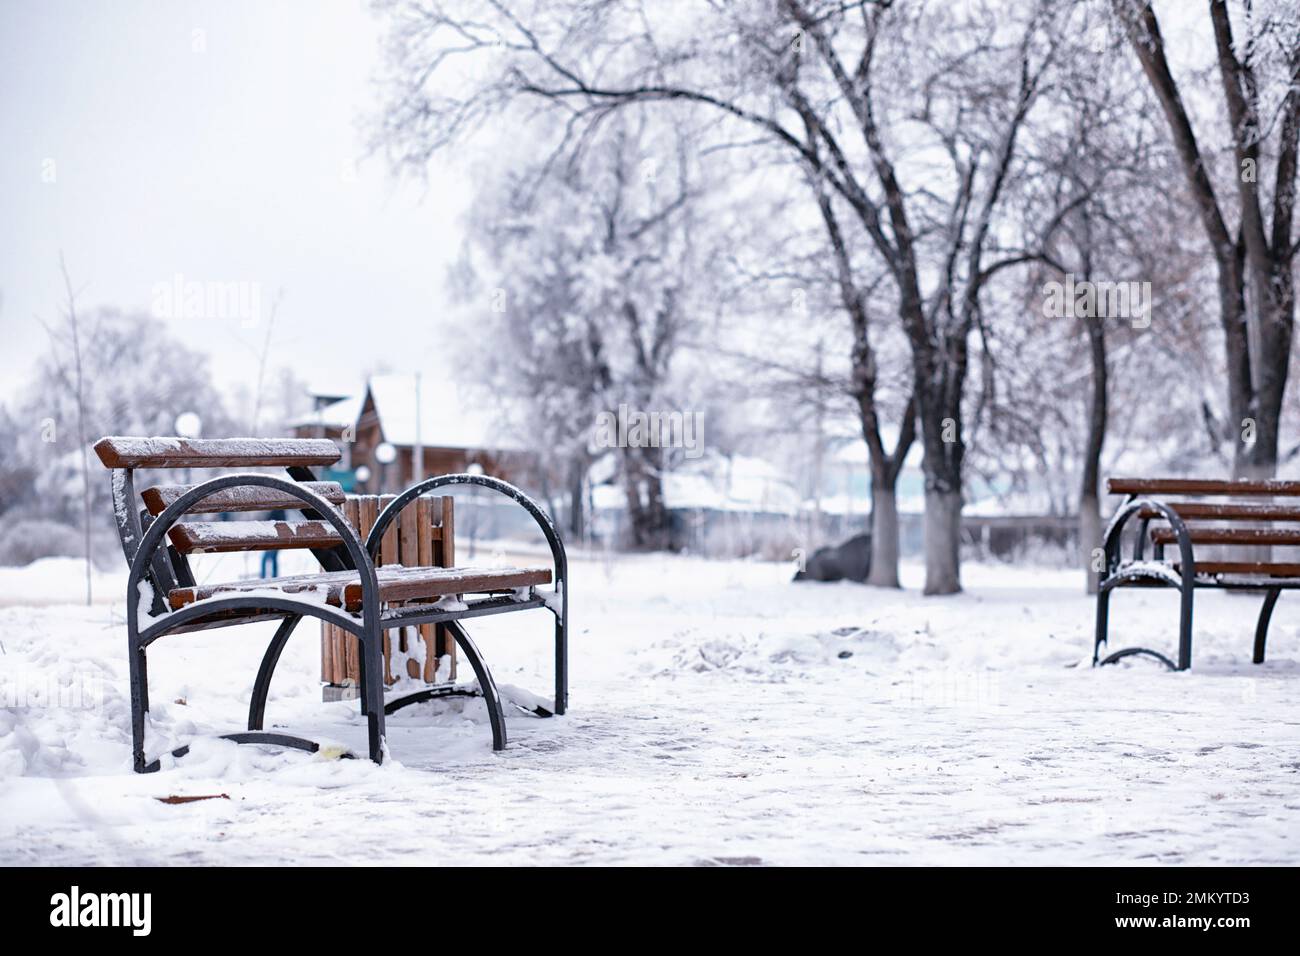 garez le banc sur une allée d'hiver à la tombée de la neige. banc de neige après la tempête de neige ou dans la calamité de neige en europe, photographie de nuit d'hiver en ville Banque D'Images